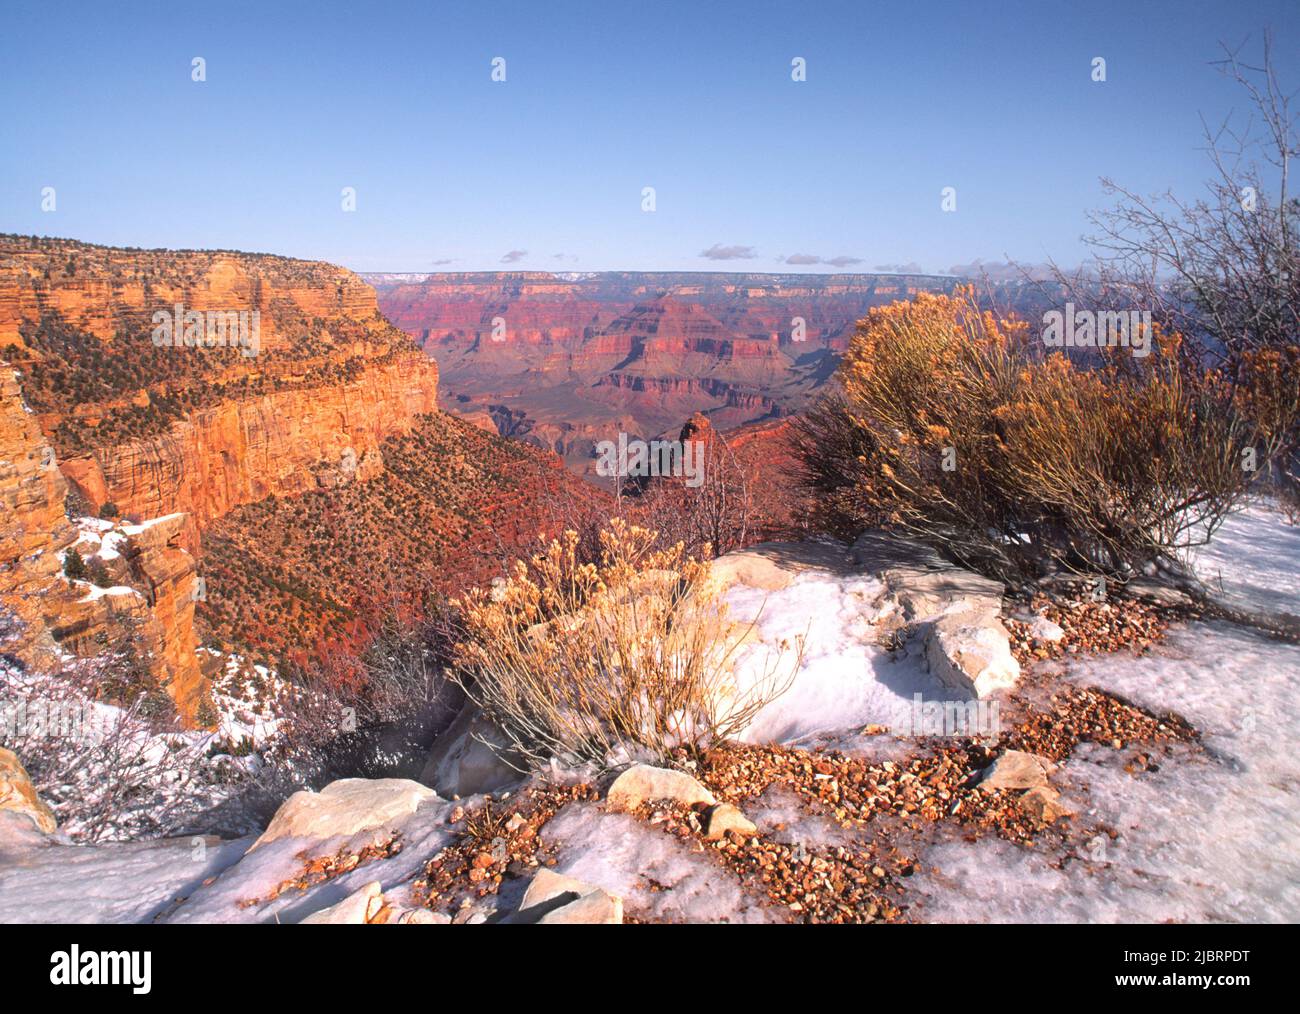 Parco Nazionale del Grand Canyon South Rim. Arizona, Stati Uniti. Paesaggio panoramico di canyon neve sul terreno. Parchi nazionali americani. Sito Patrimonio dell'Umanità. Autunno Foto Stock